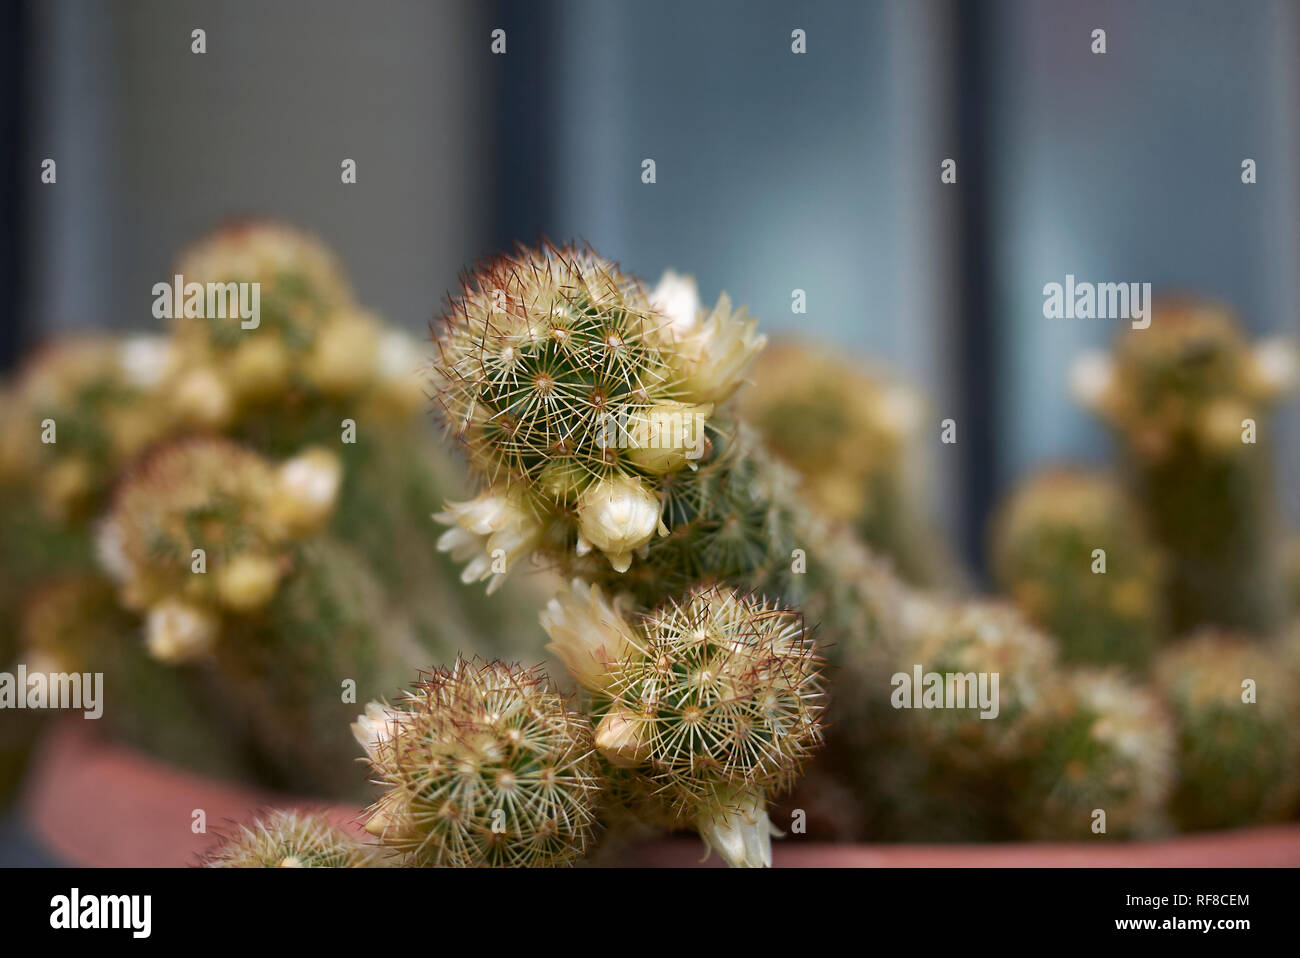 Mammillaria elongata cactus with yellow flower Stock Photo